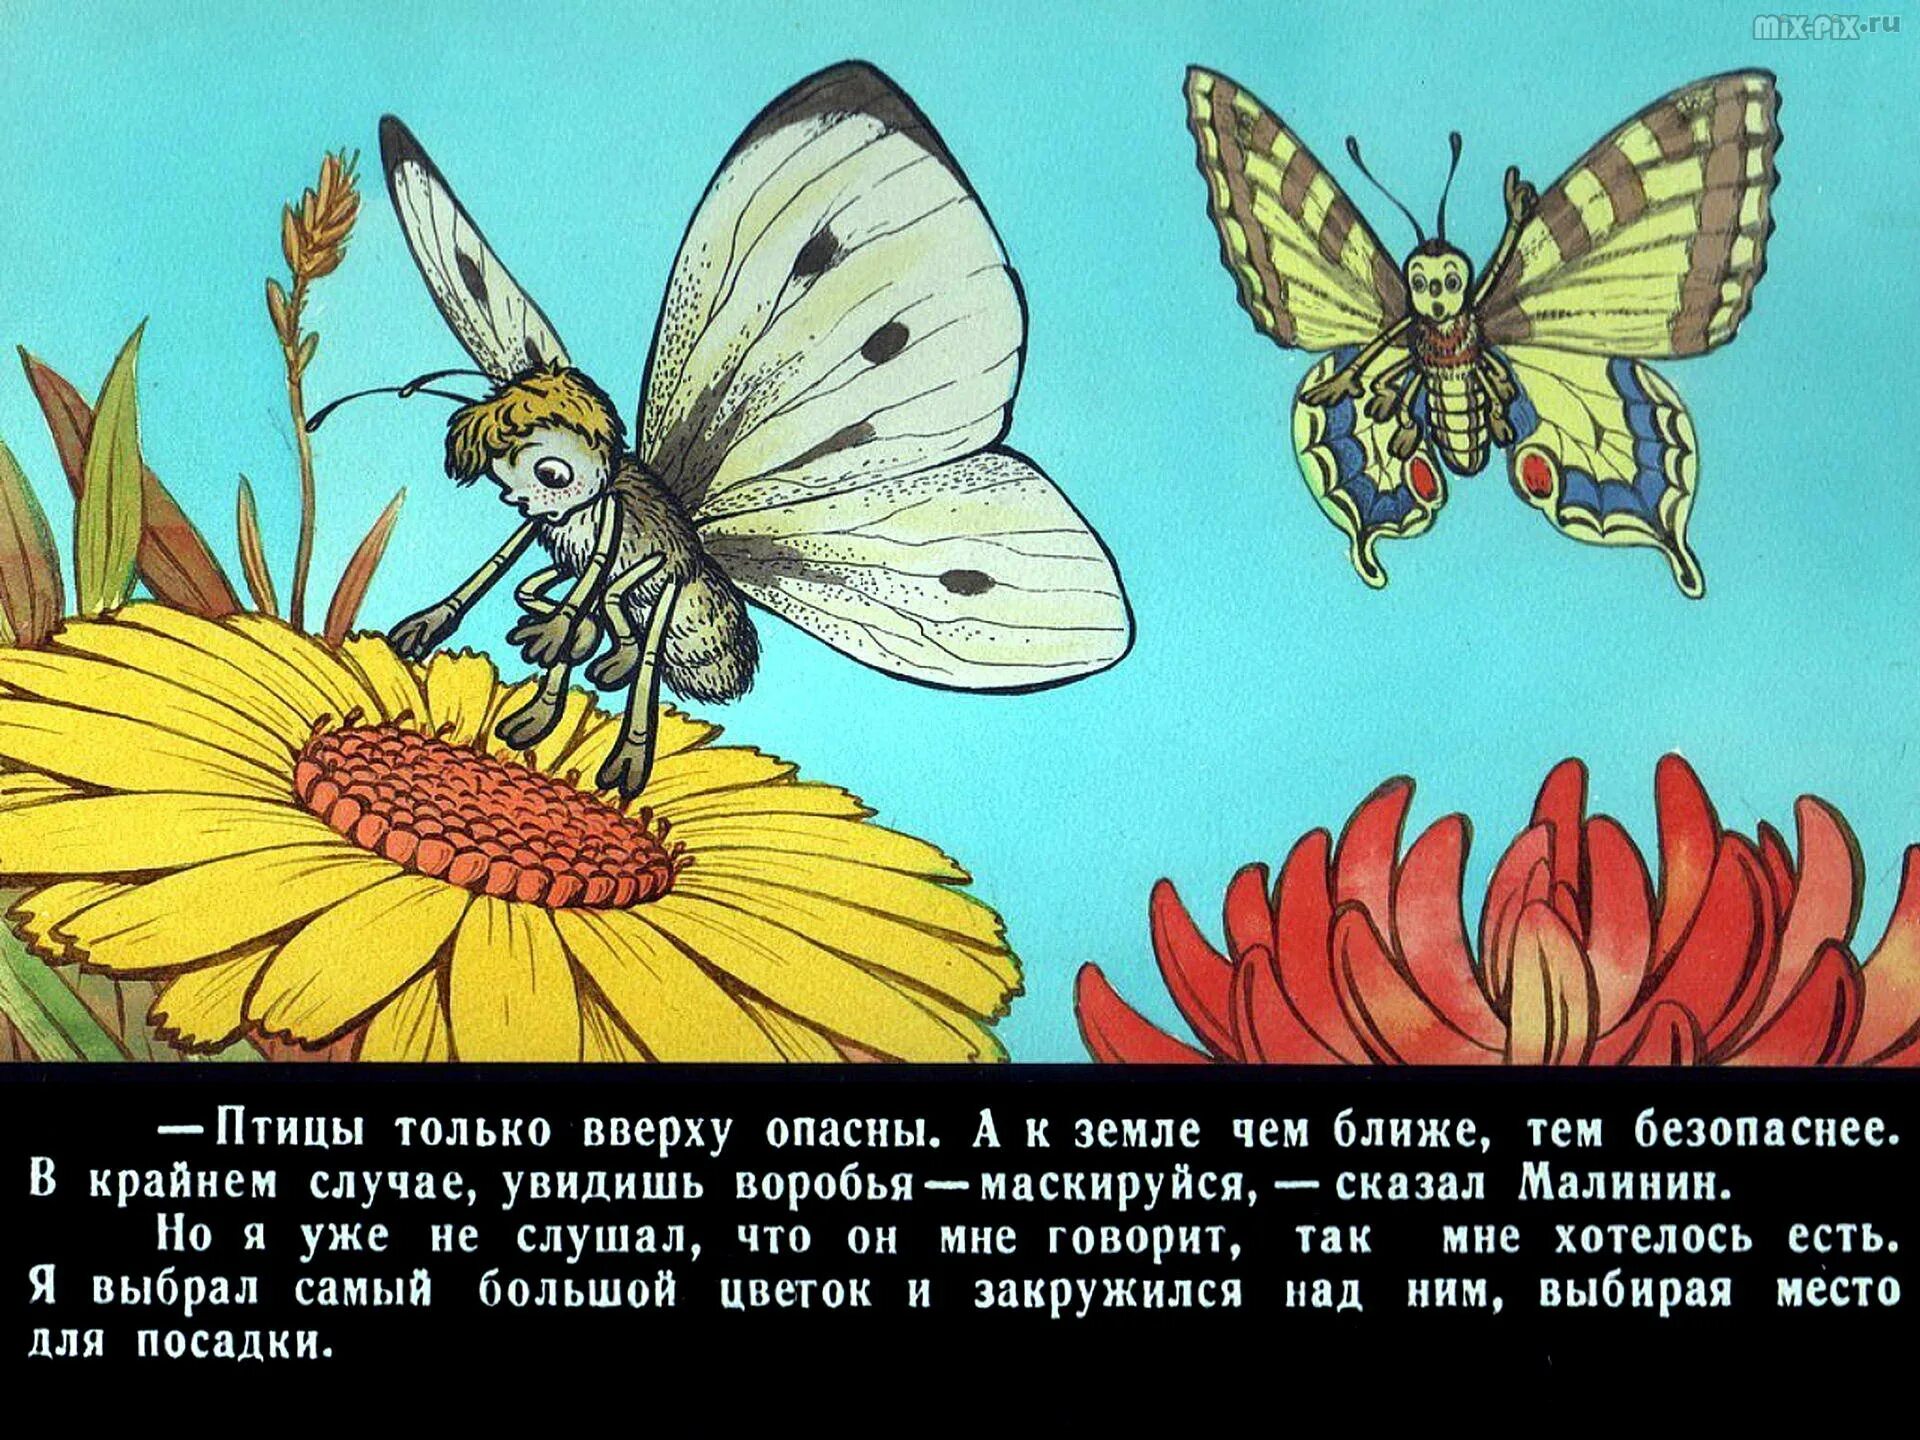 Повесть будь человеком. Иллюстрация к произведению Баранкин будь человеком. Баранкин бабочка. Детские рисунки в.в.Медведев "Баранкин, будь человеком". Баранкин будь человеком бабочки.